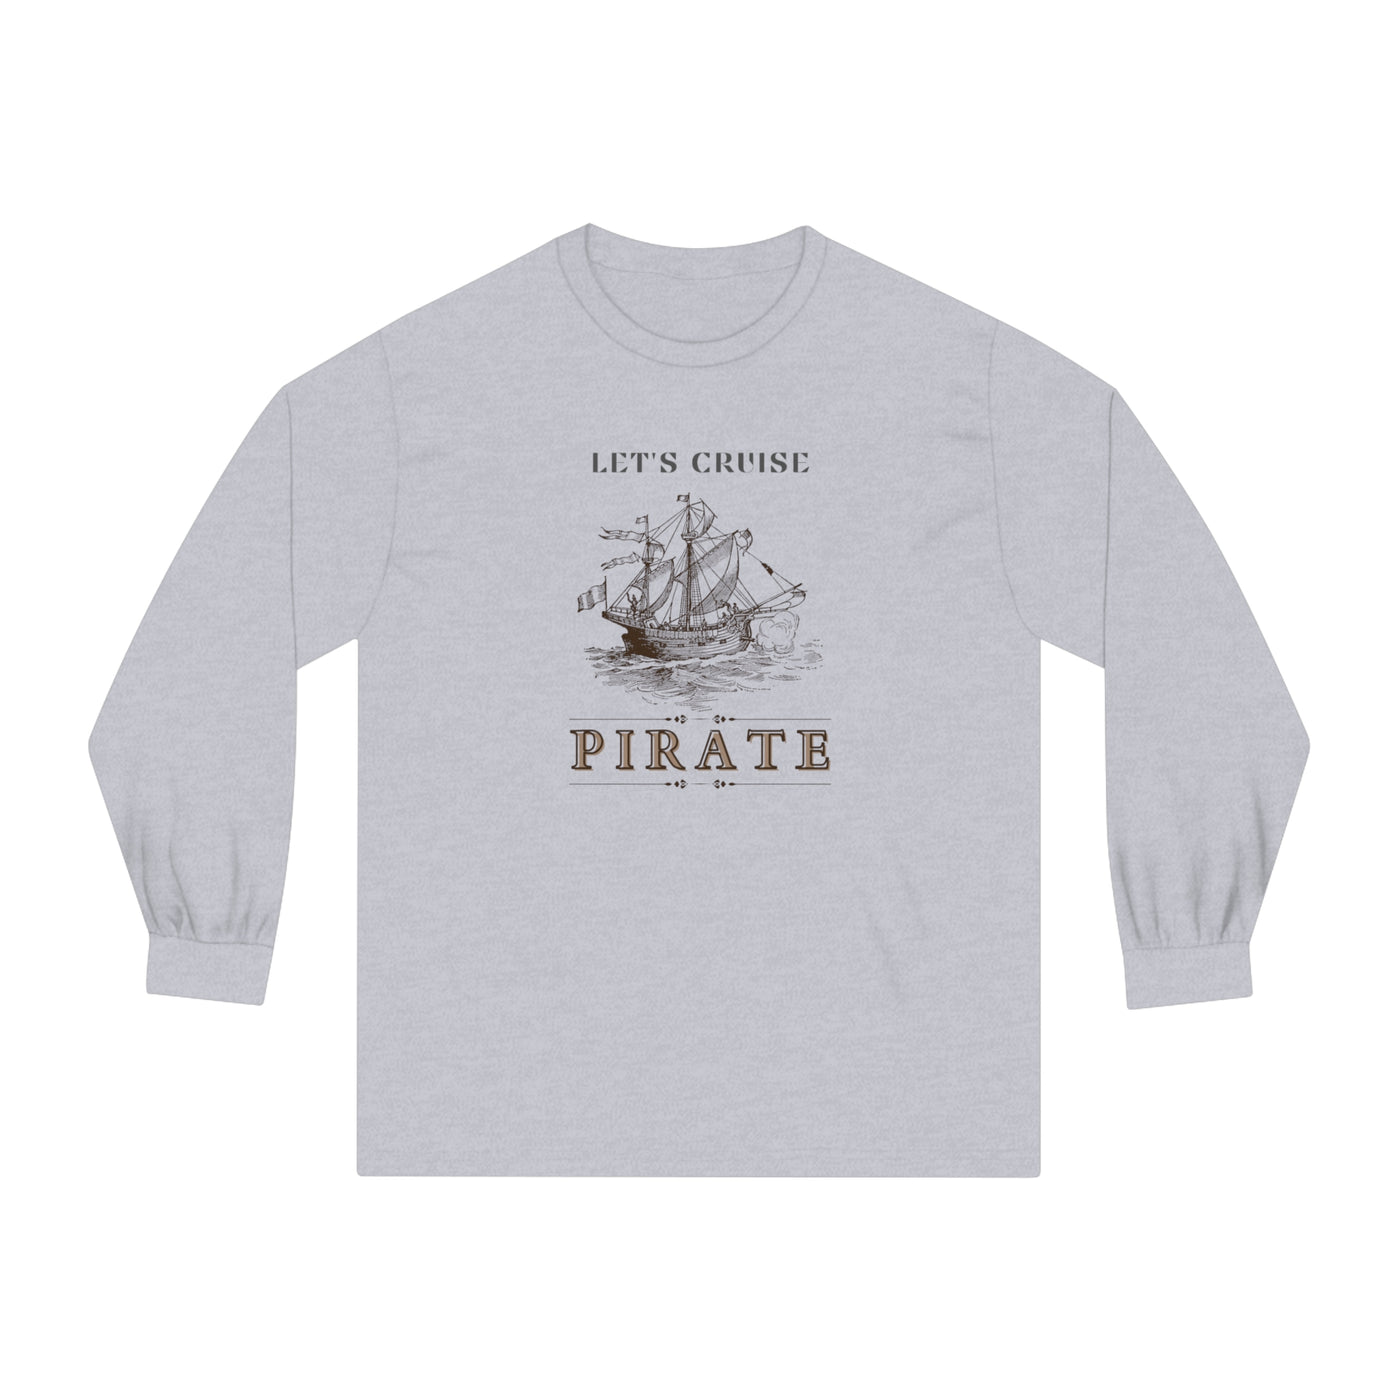 Let's Cruise Pirates Unisex Long Sleeve T-Shirt